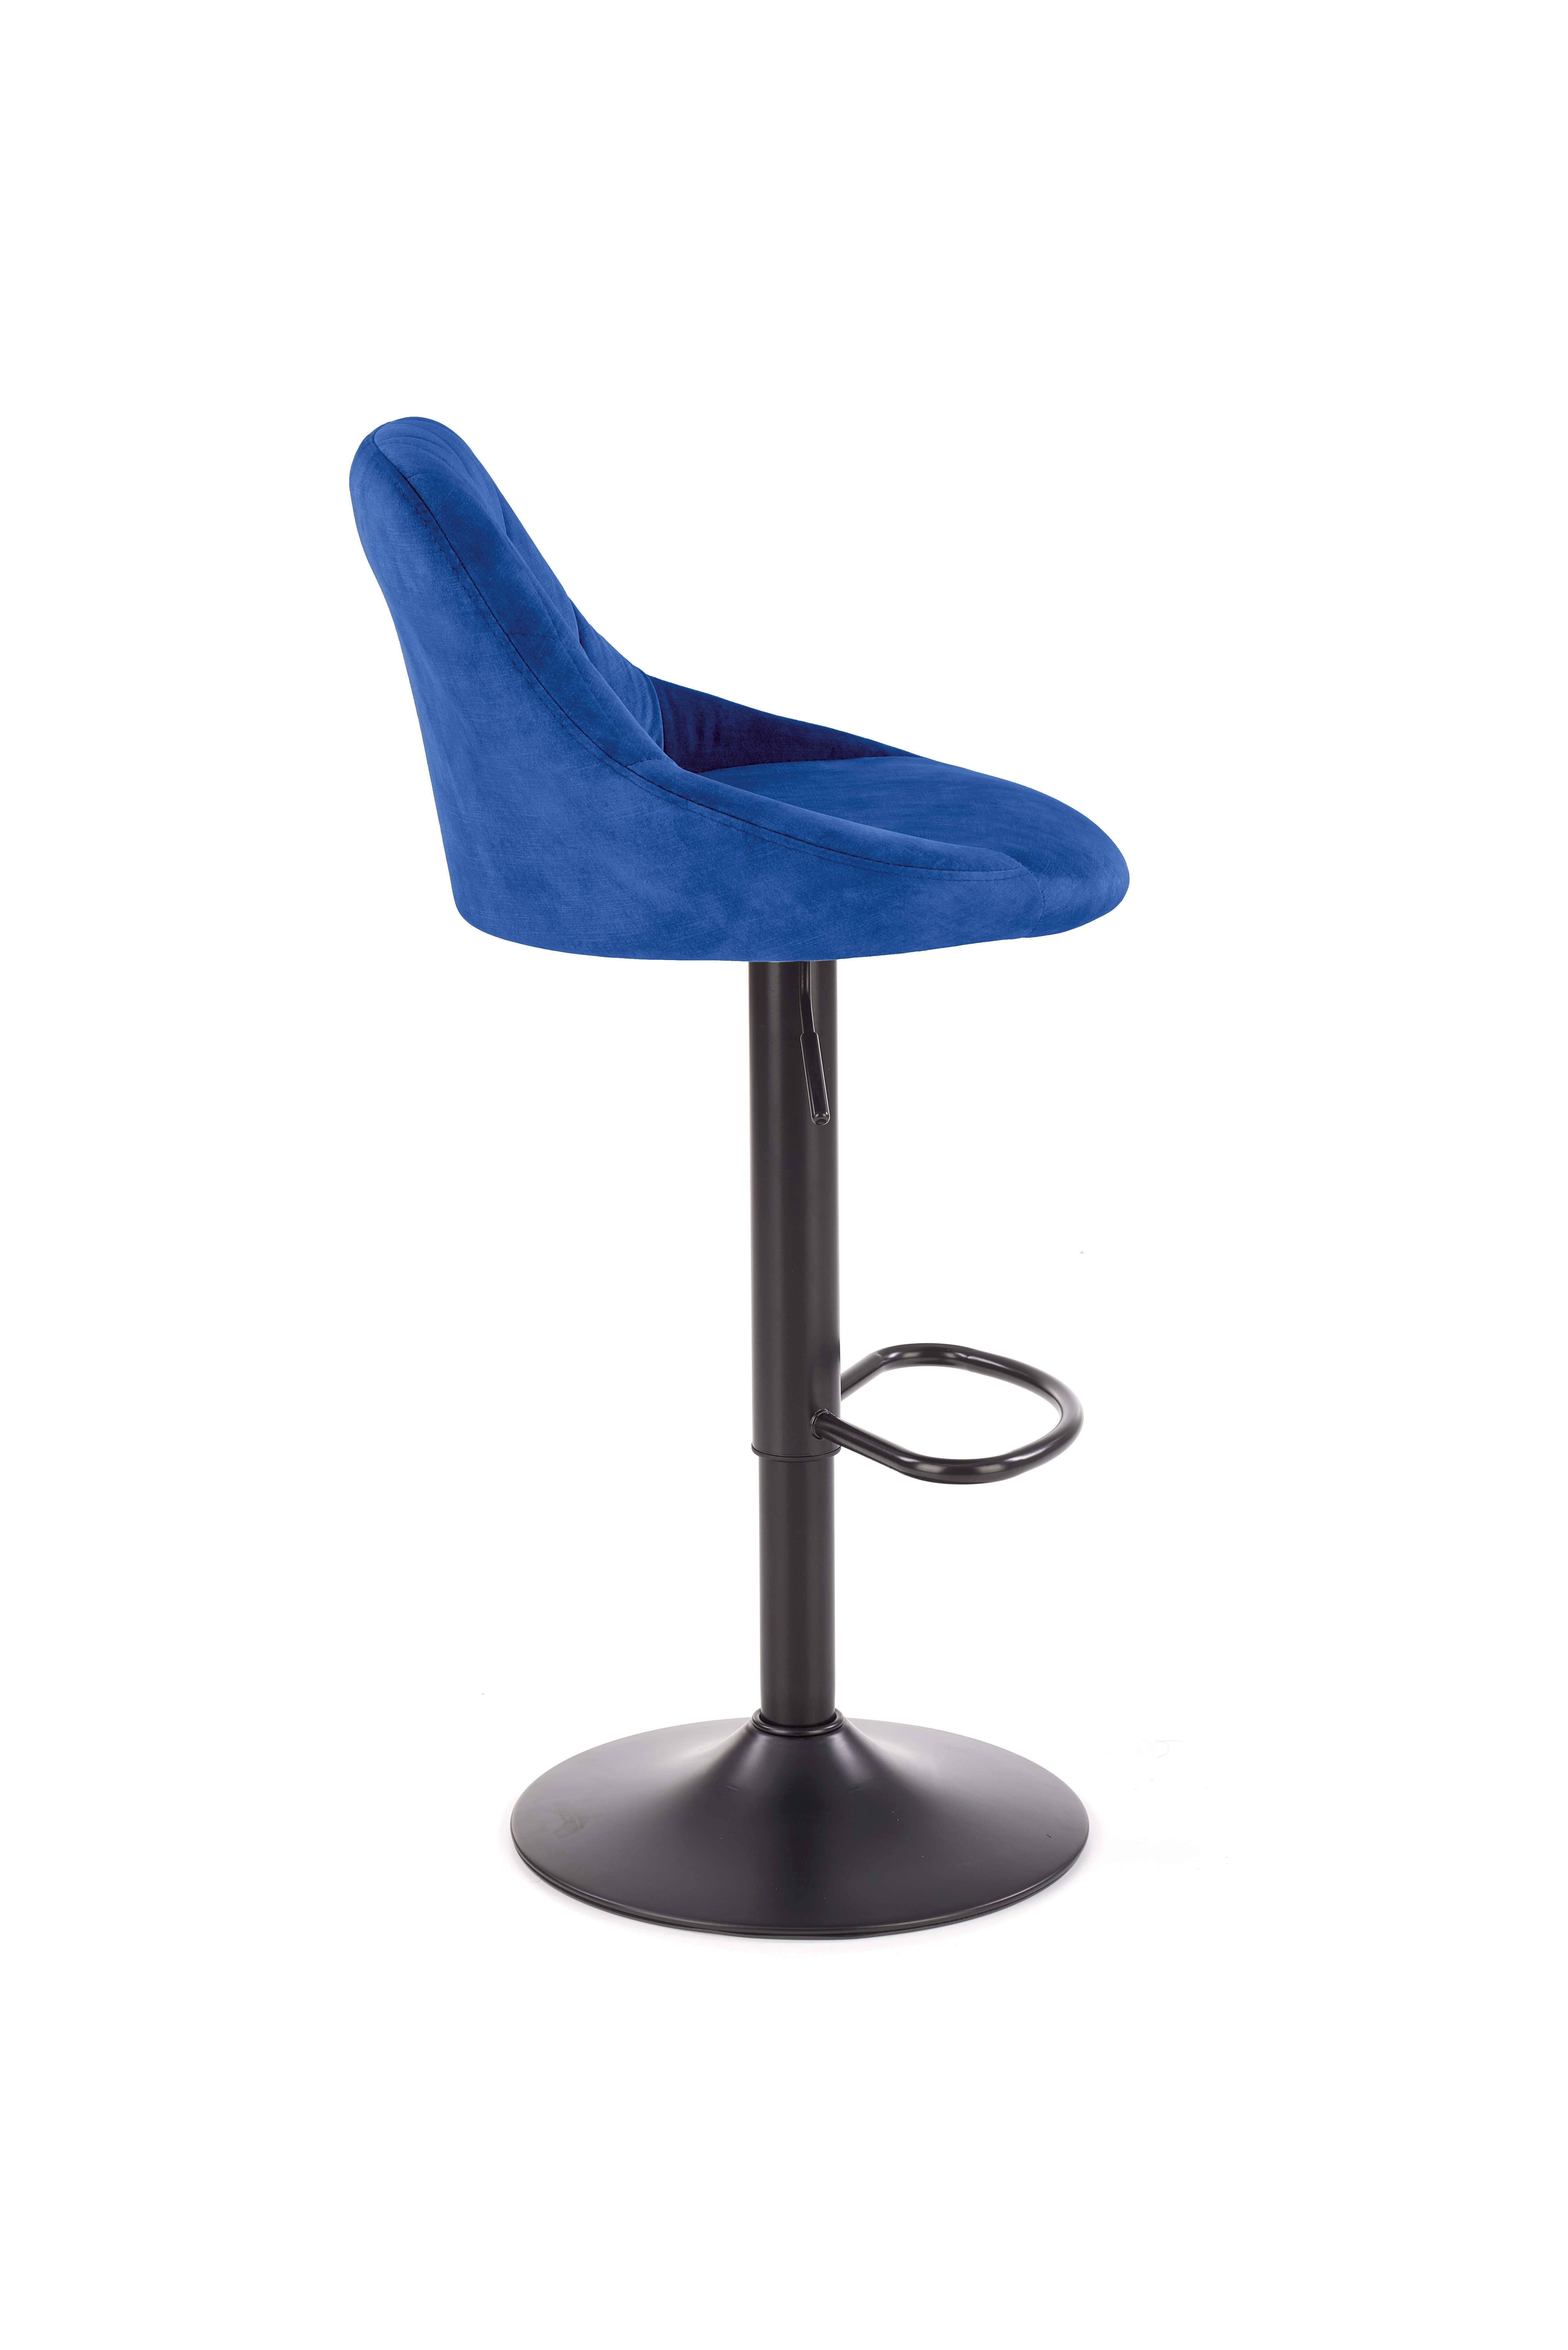 H101 Barová židle tmavě modrý h101 Barová židle tmavě modrý